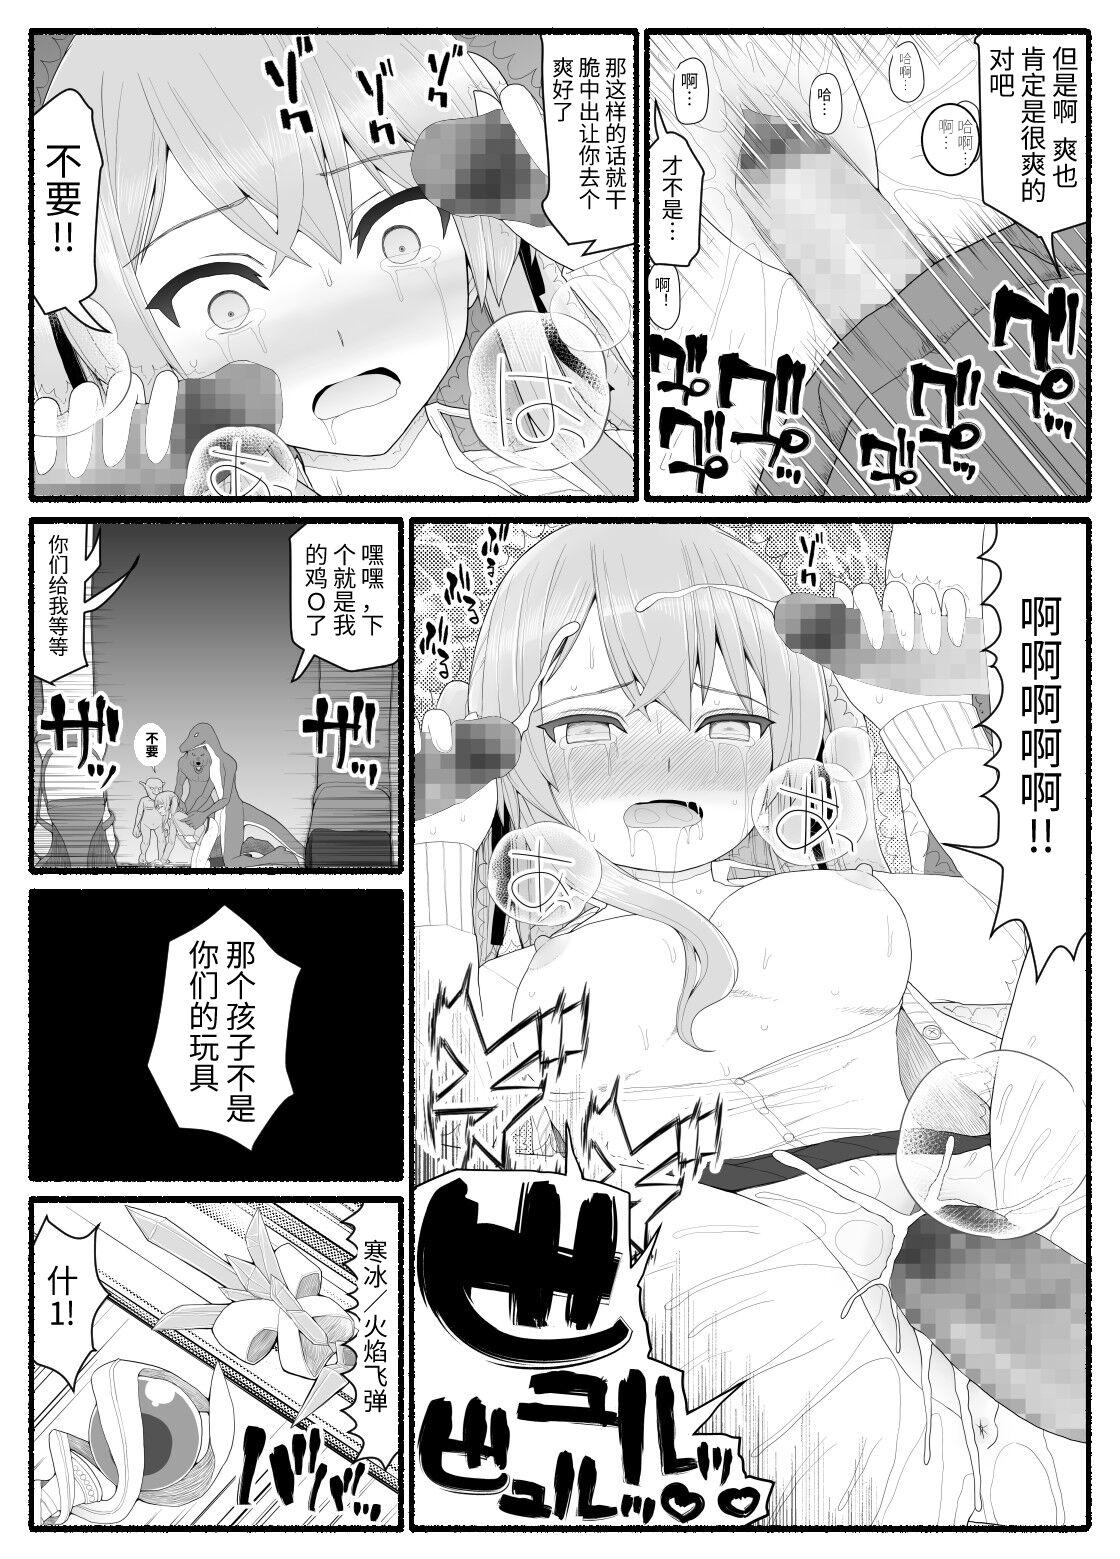 Naturaltits Mahou Shoujo VS Inma Seibutsu 8 Teenie - Page 4